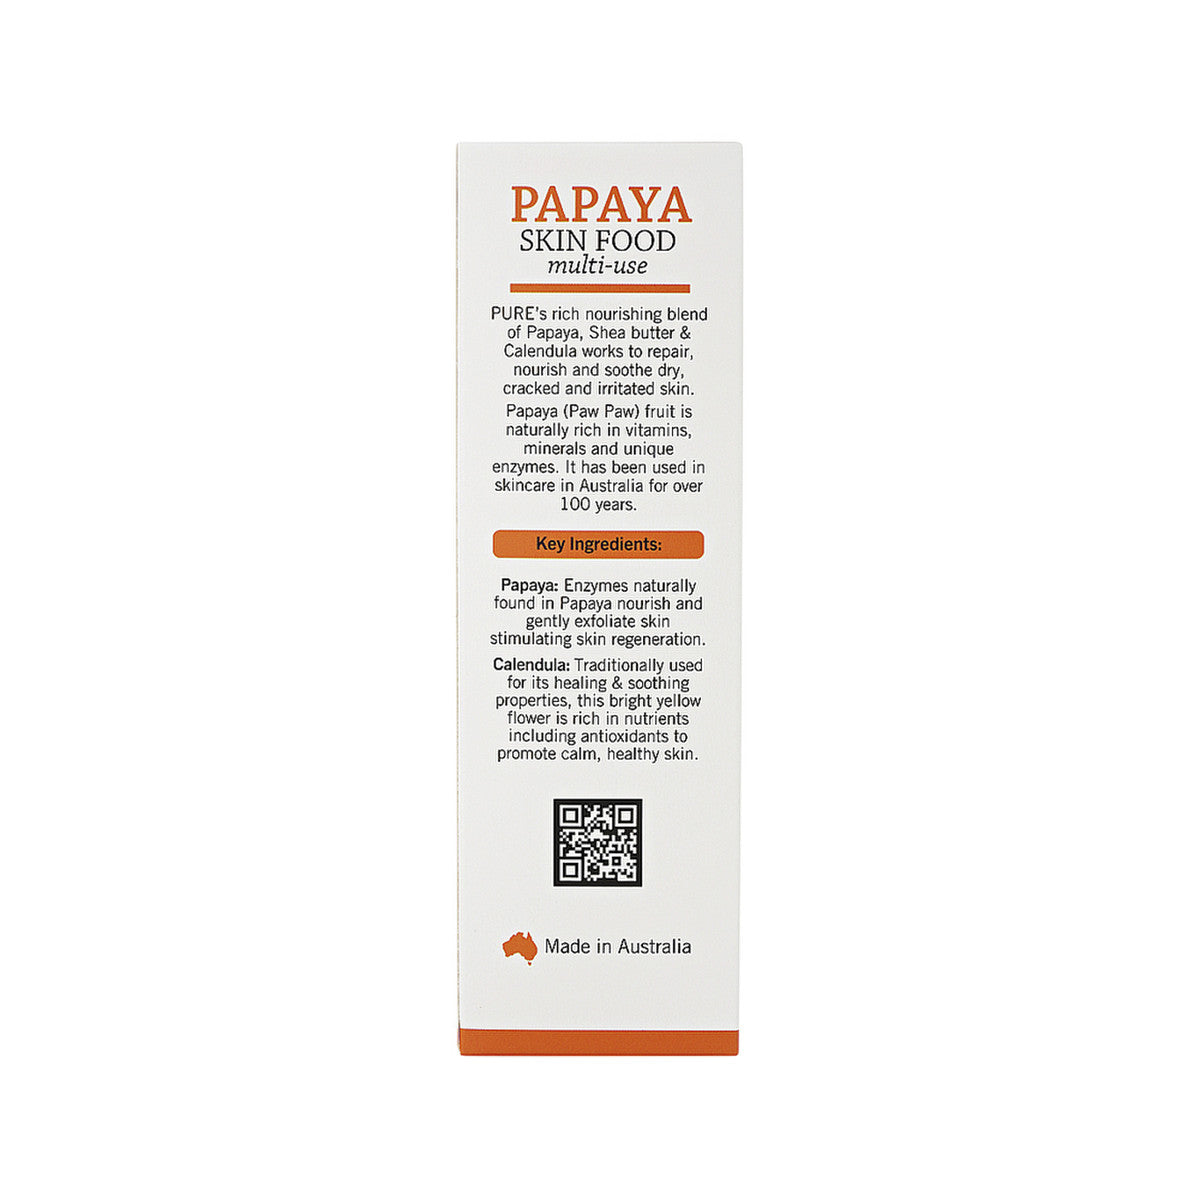 P'URE Papayacare Papaya Skin Food Multi-Use - Paw Paw with Calendula 75g